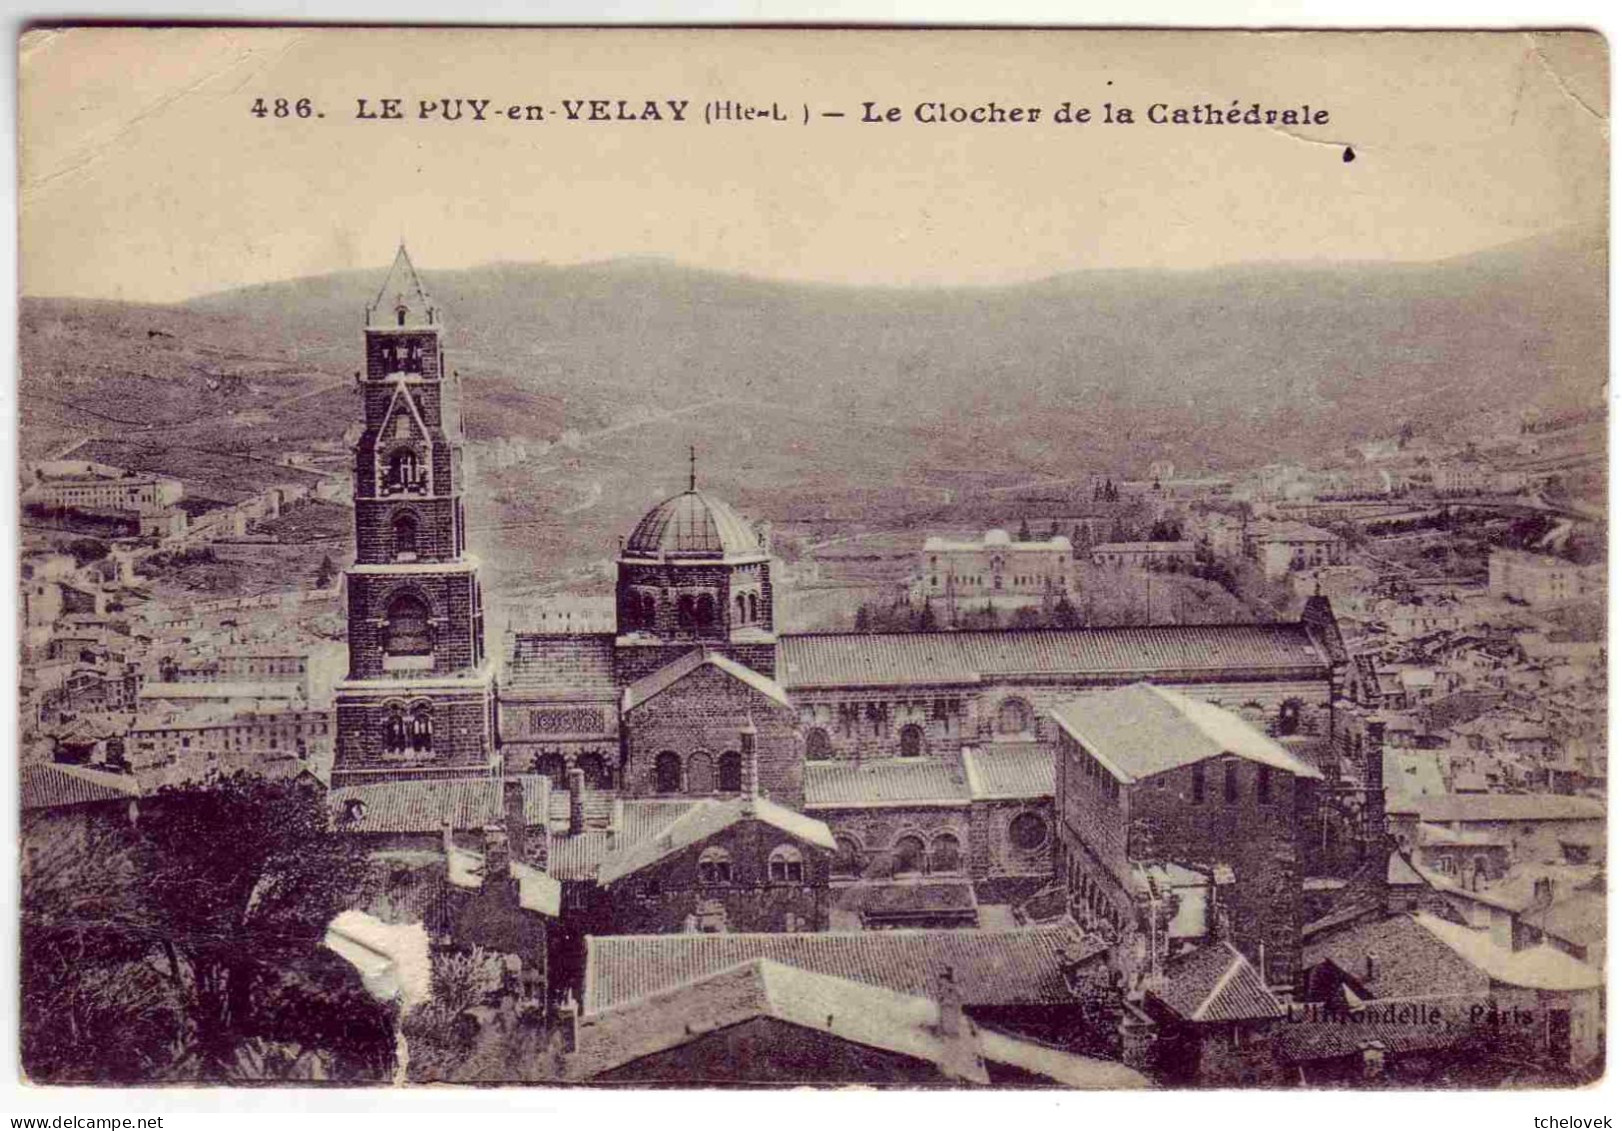 (43). Le Puy en Velay. 18. Rue des tables & clocher de la cathedrale & 144 interieur Cathedrale & Aiguilhe nuit & (2)